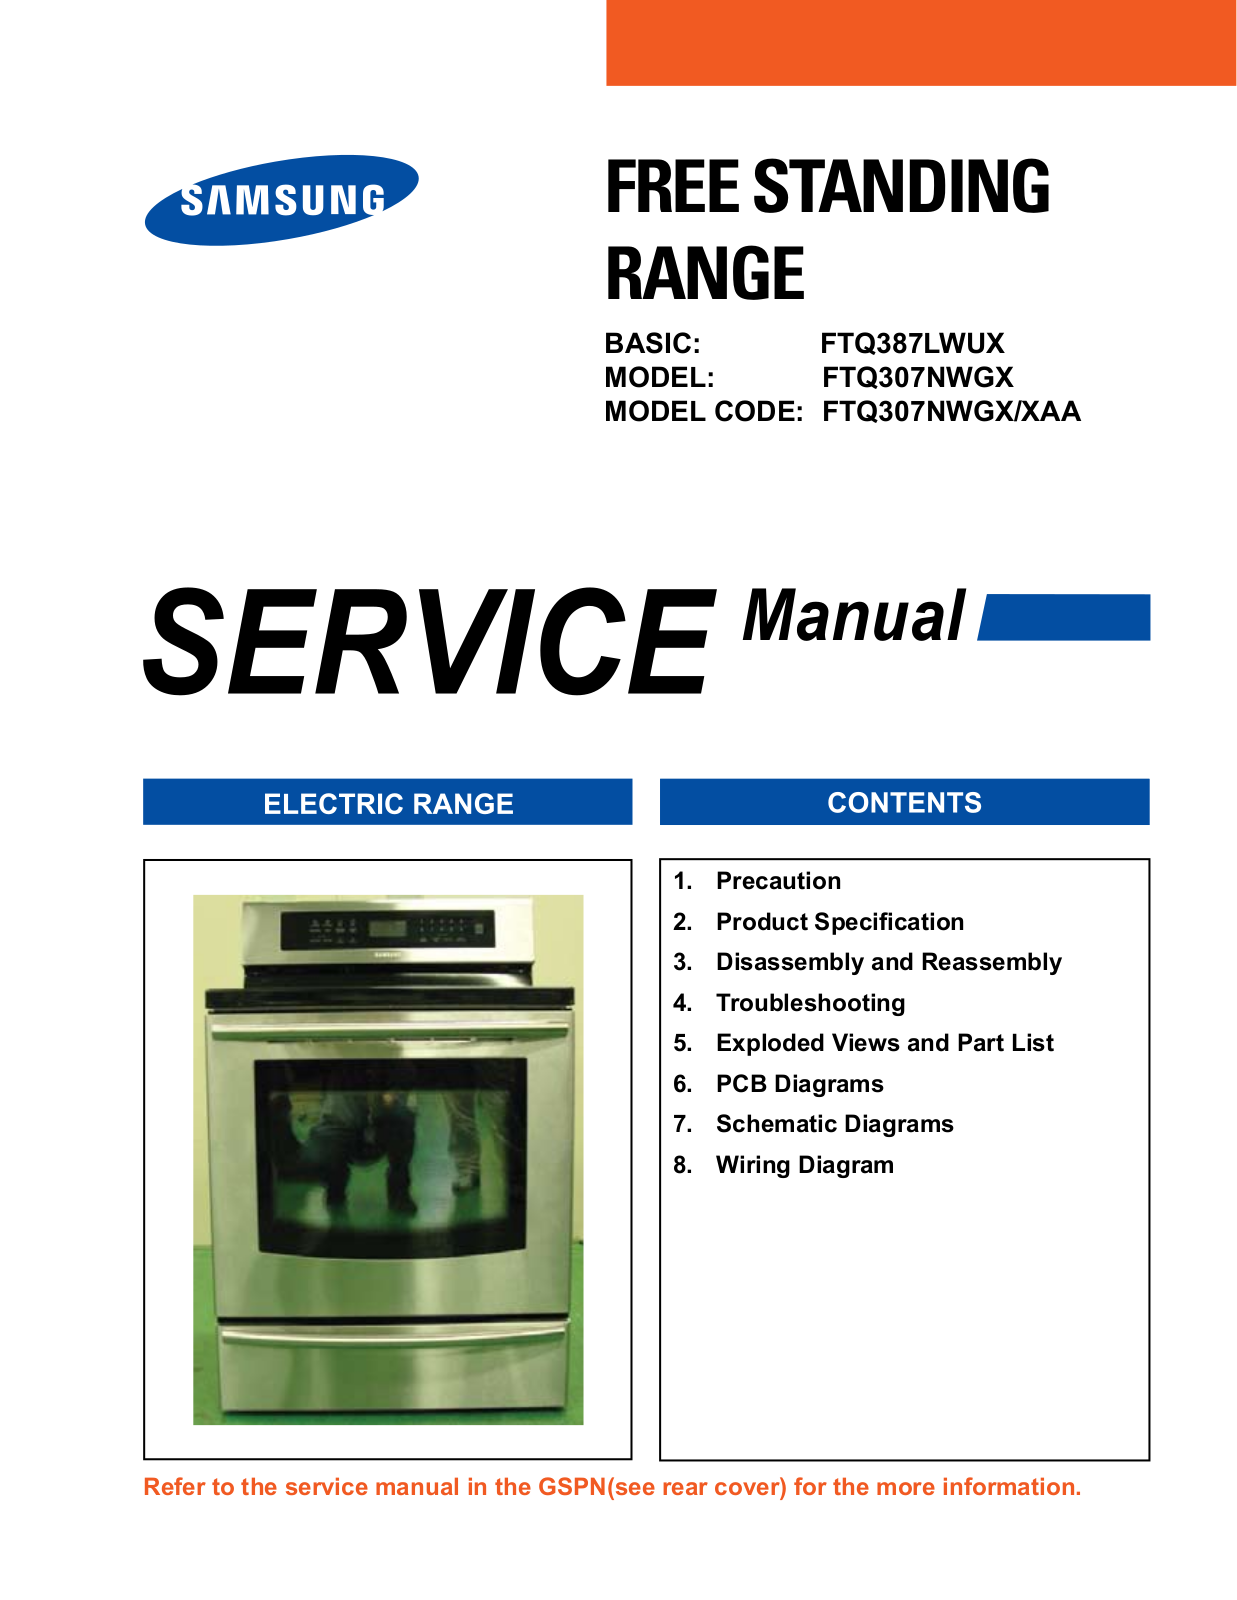 Samsung FTQ387LWUX, FTQ307NWGX Service Manual